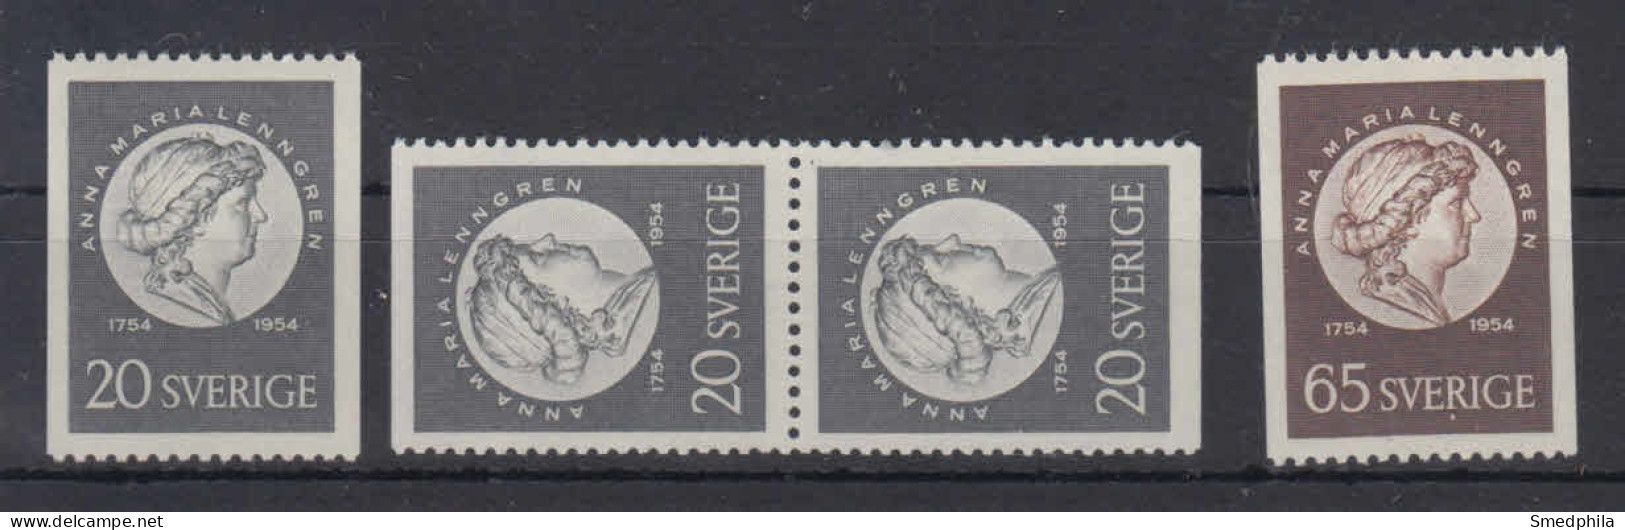 Sweden 1954 - Michel 394-395 MNH ** - Neufs